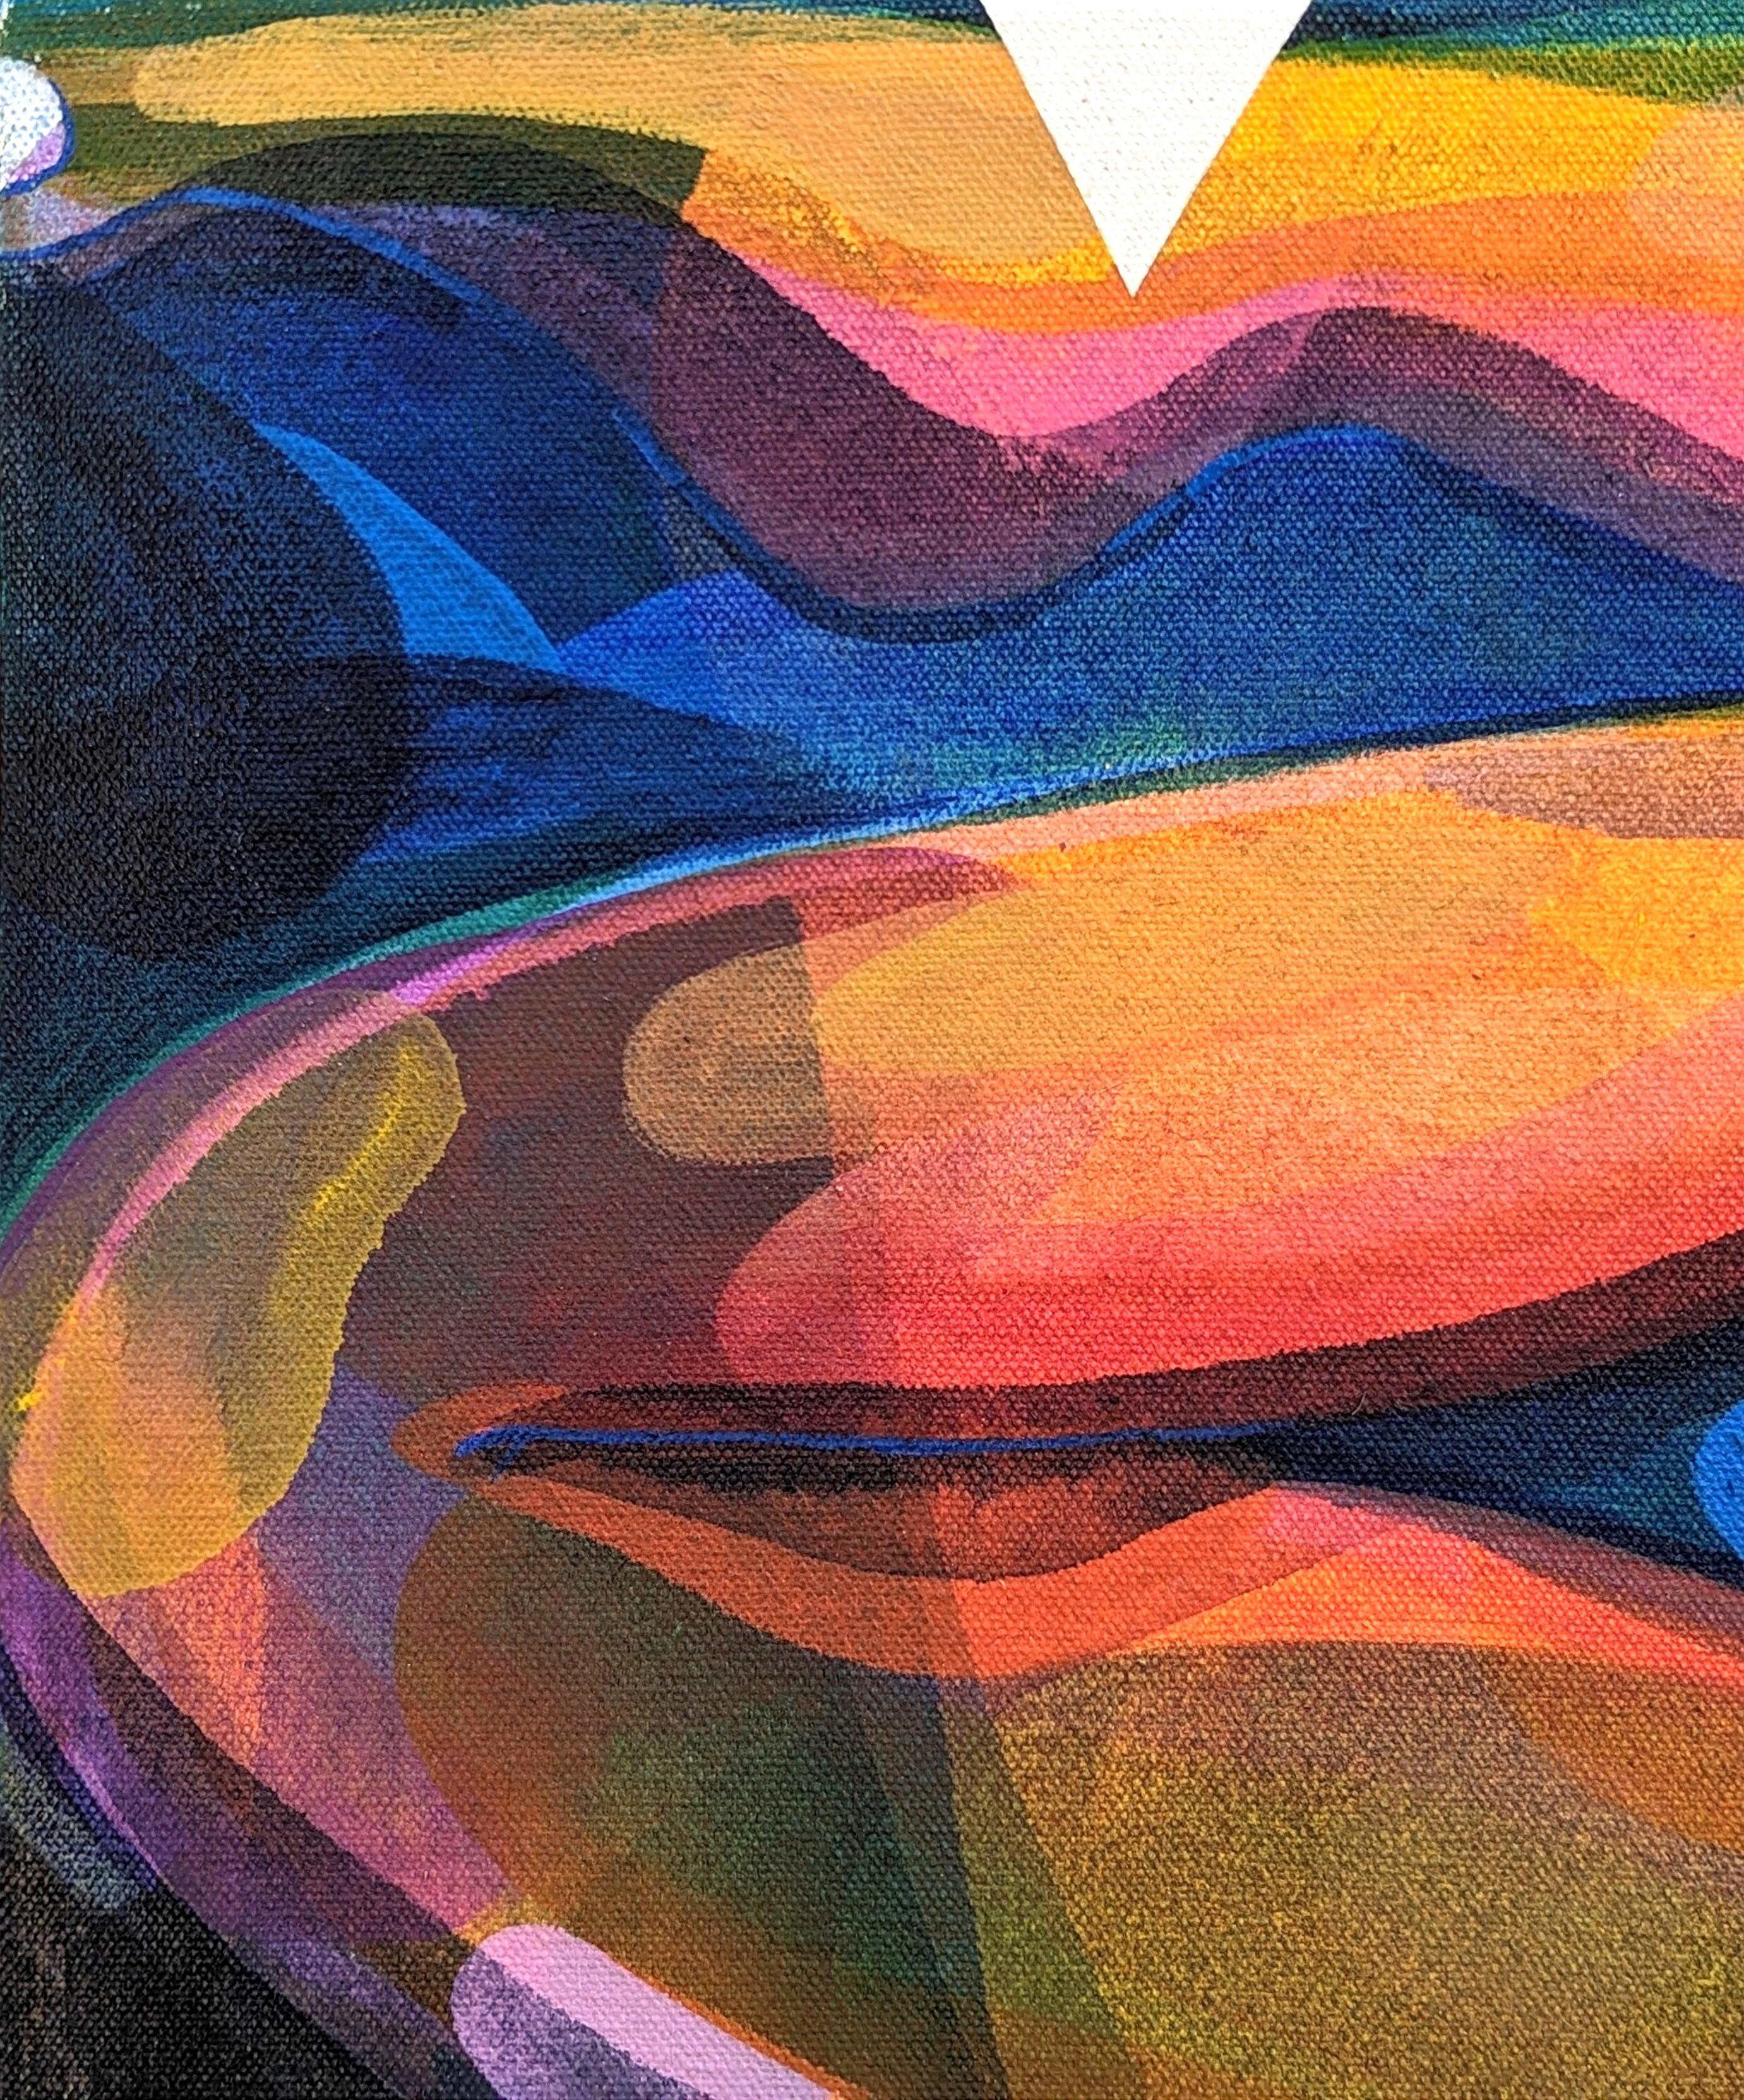 Peinture abstraite contemporaine de figure biomorphique en alligator aux tons orange et bleu - Contemporain Painting par Cecilia Beaven